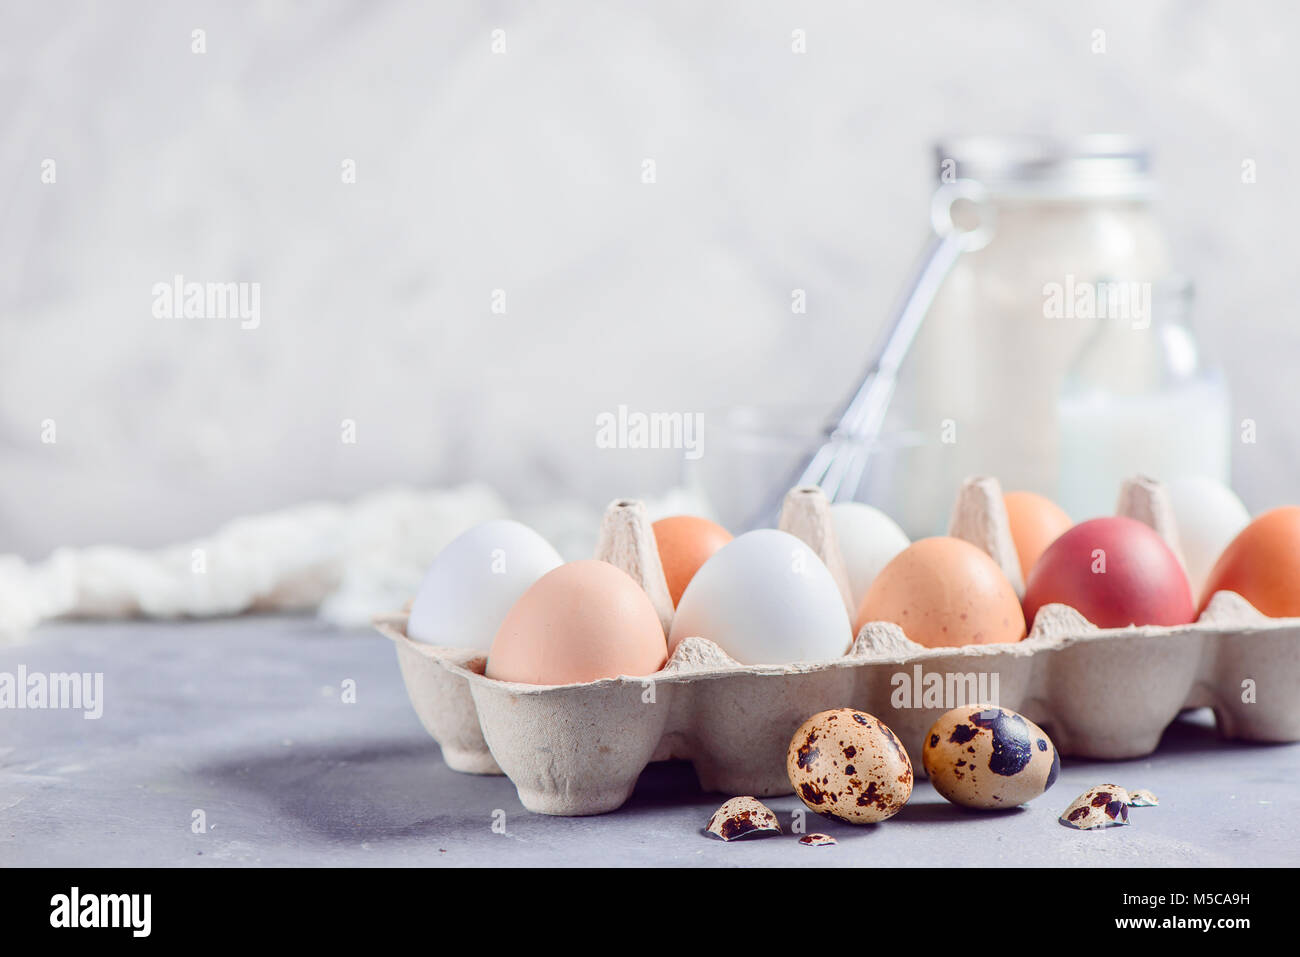 Fresca bruna e le uova bianche nel mestiere del vassoio della carta su uno sfondo luminoso con uova di quaglia, frusta e gli ingredienti per la cottura di Pasqua. Tasto alto background wi Foto Stock